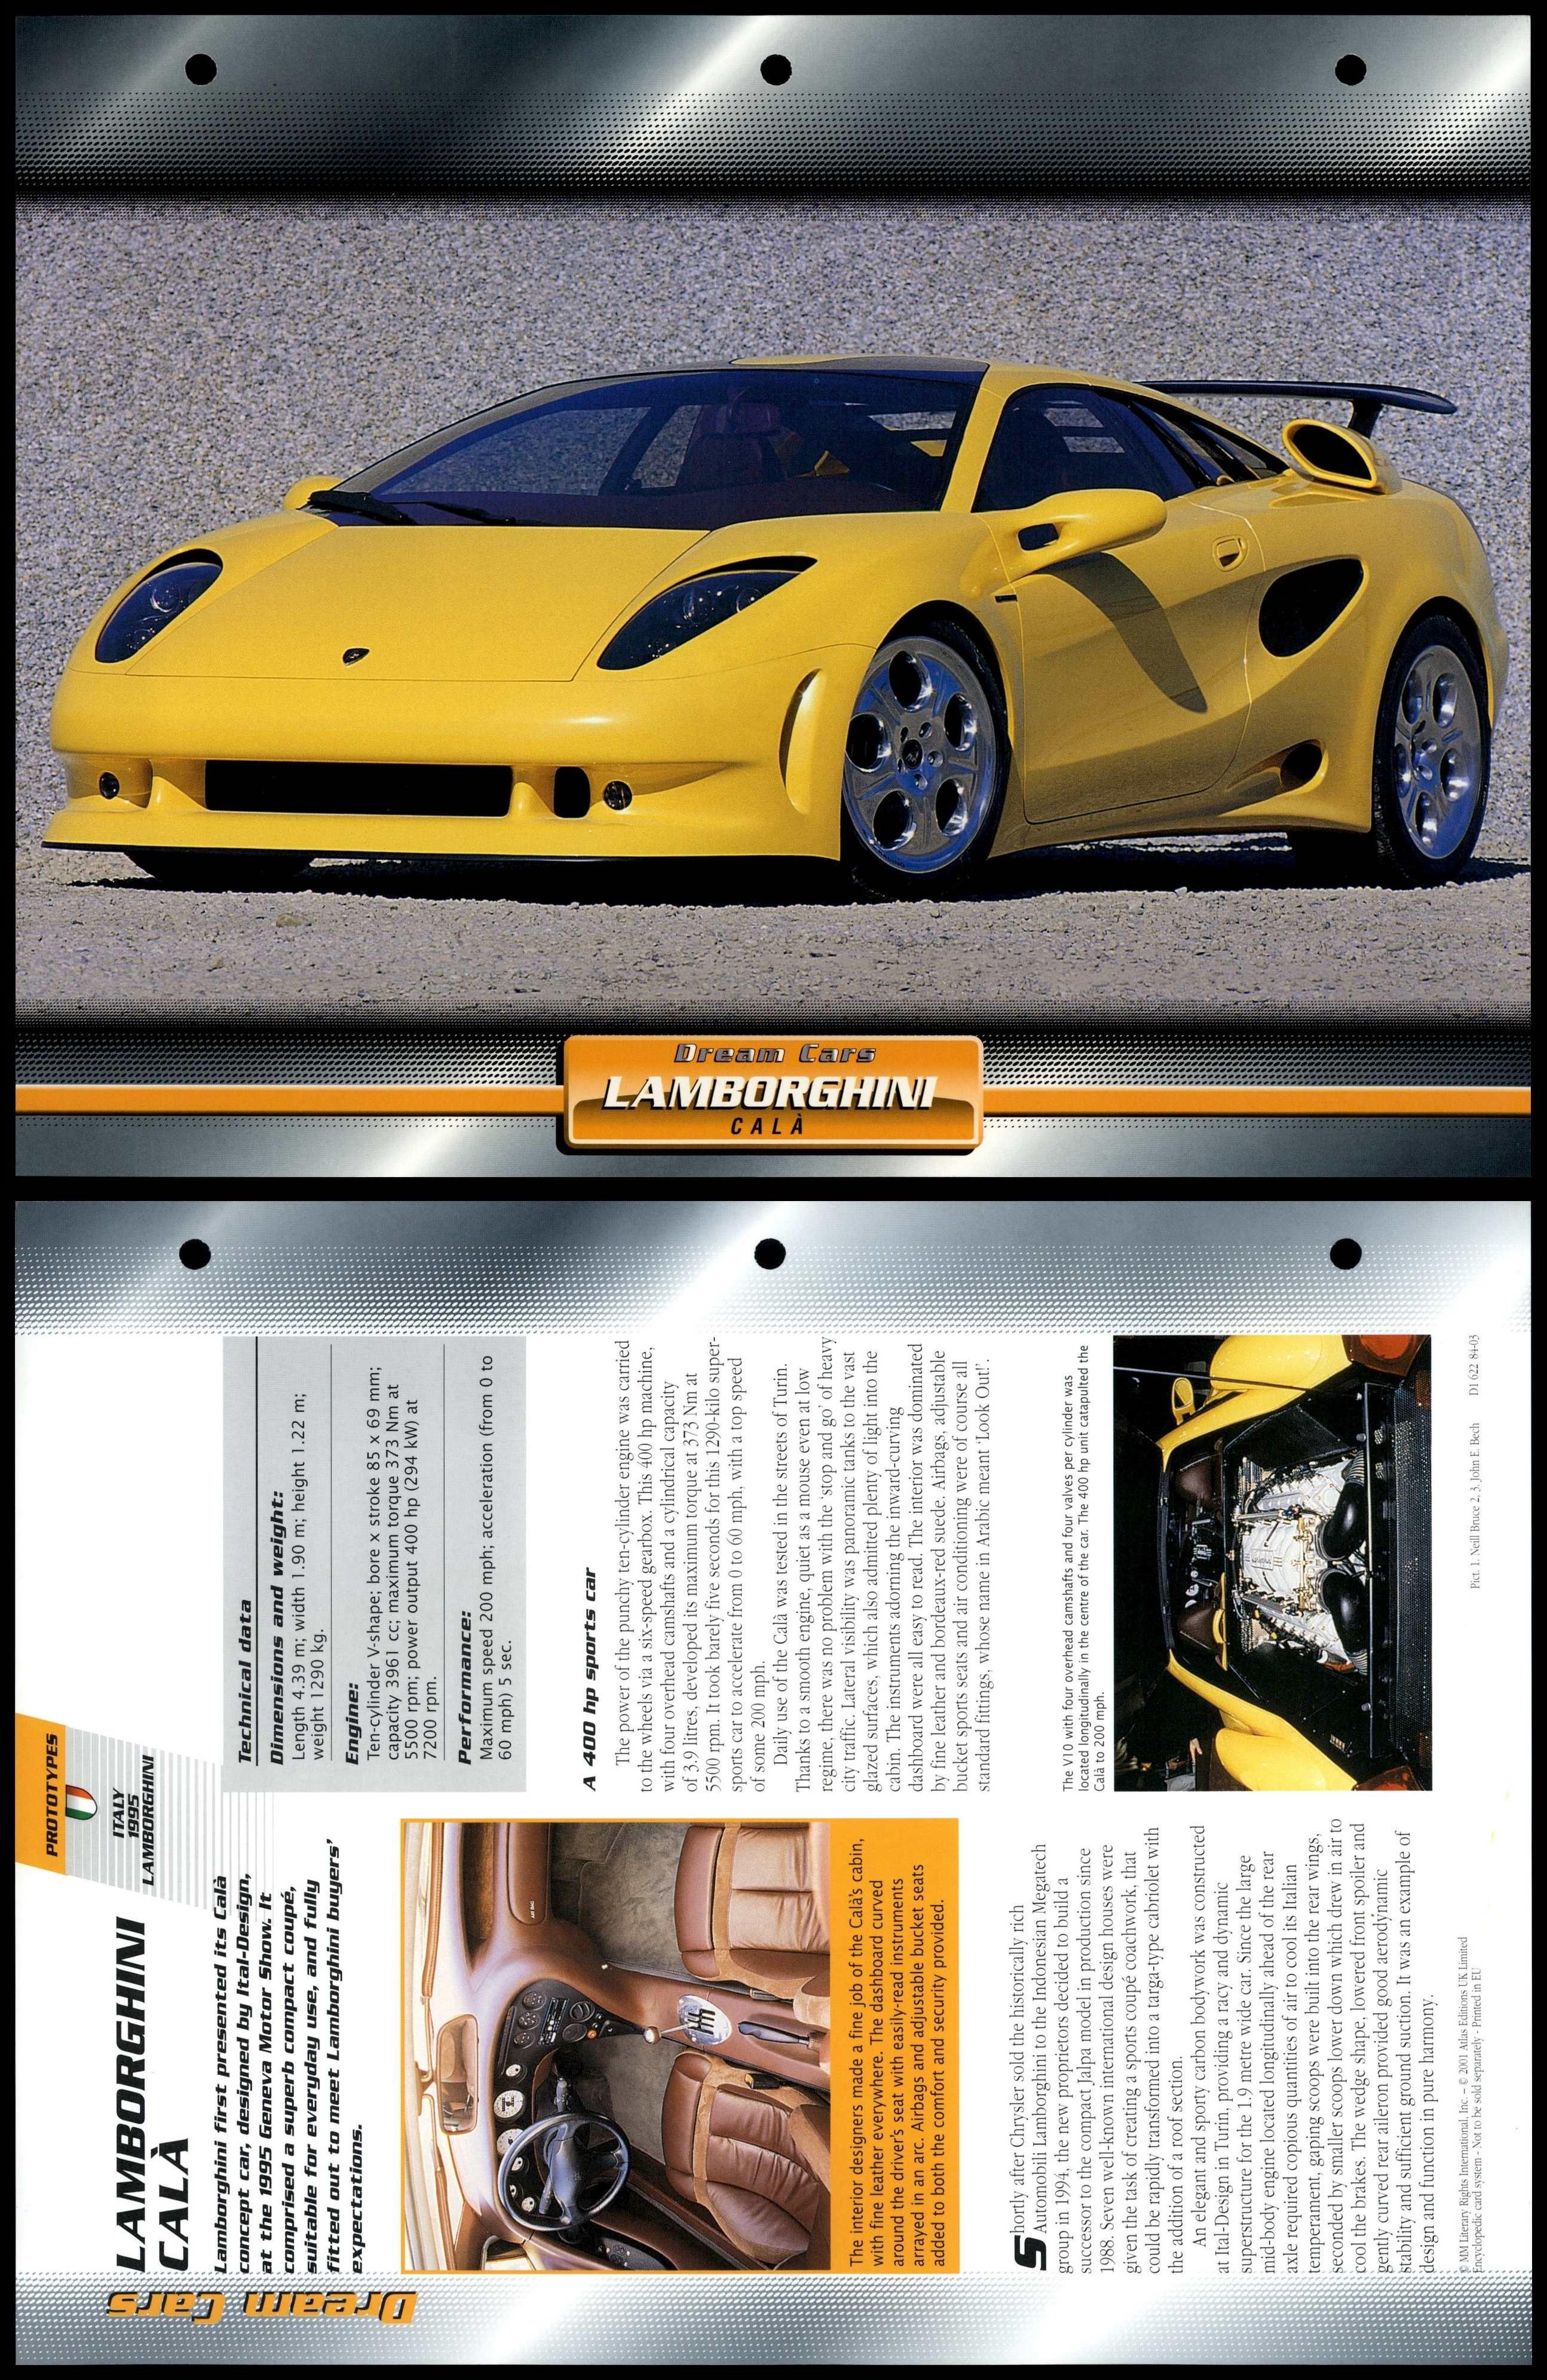 Lamborghini Cala - 1995 - Prototypes - Atlas Dream Cars Fact File Card